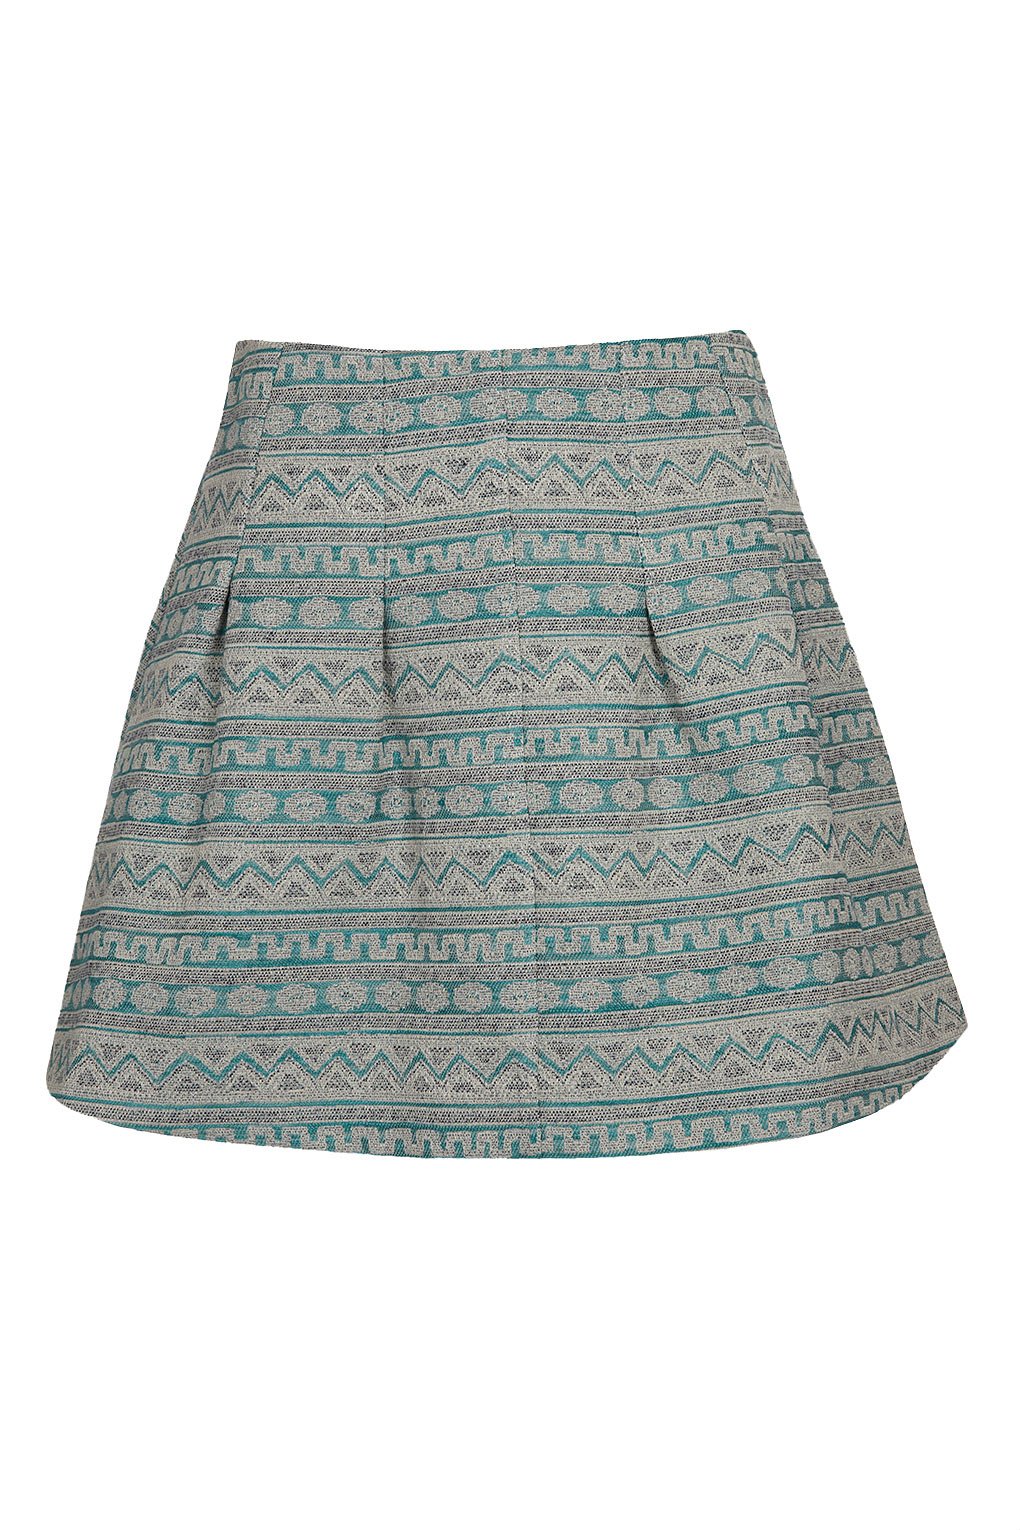 Topshop Aztec Stitch Mini Skirt.jpg